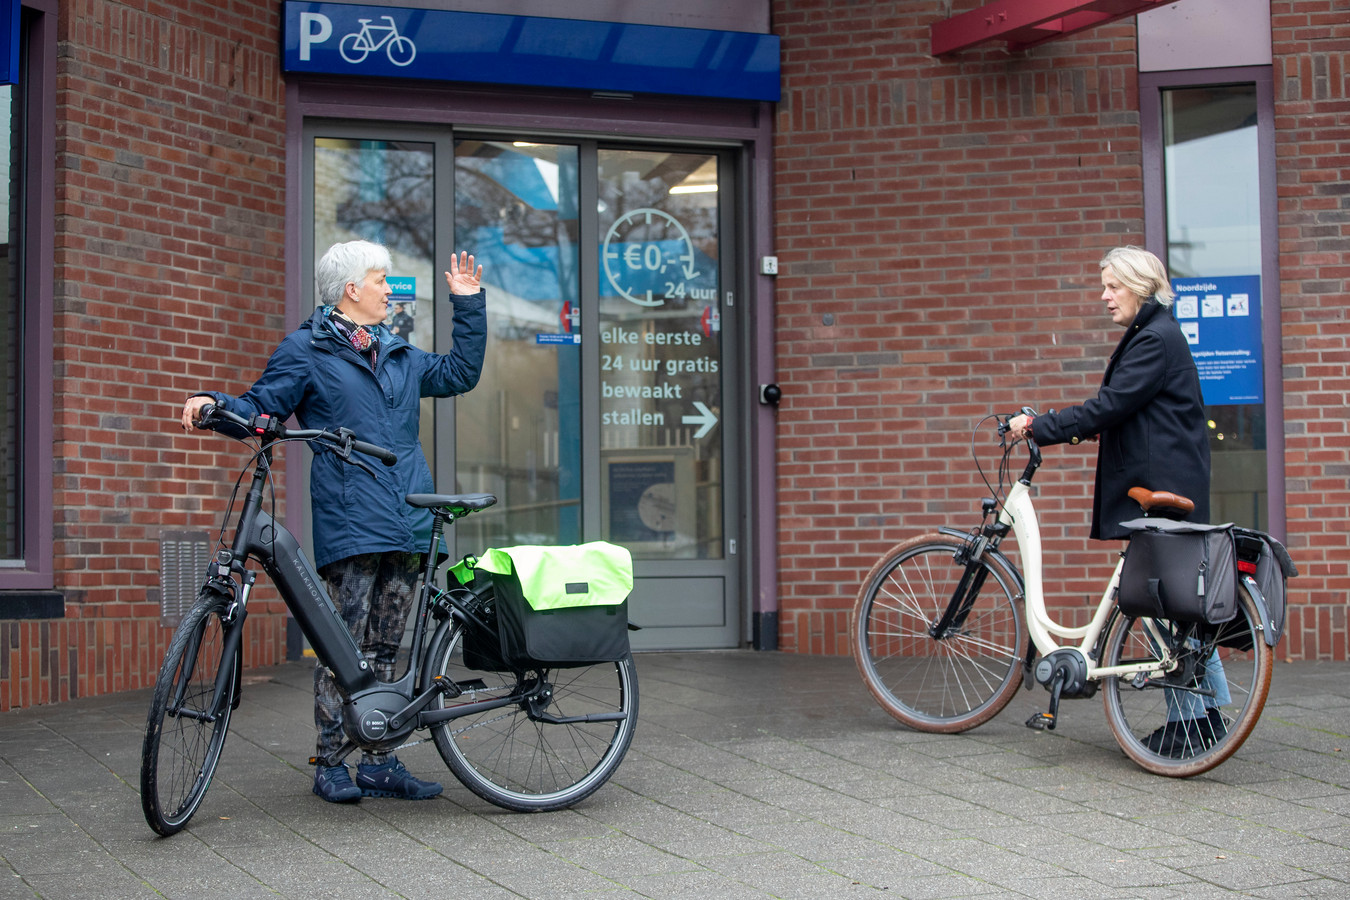 Ilse van der Put (links) is tot twee keer toe bestolen van haar elektrische fiets in de ‘onbewaakte’ fietsenstalling van Station Ede-Wageningen.